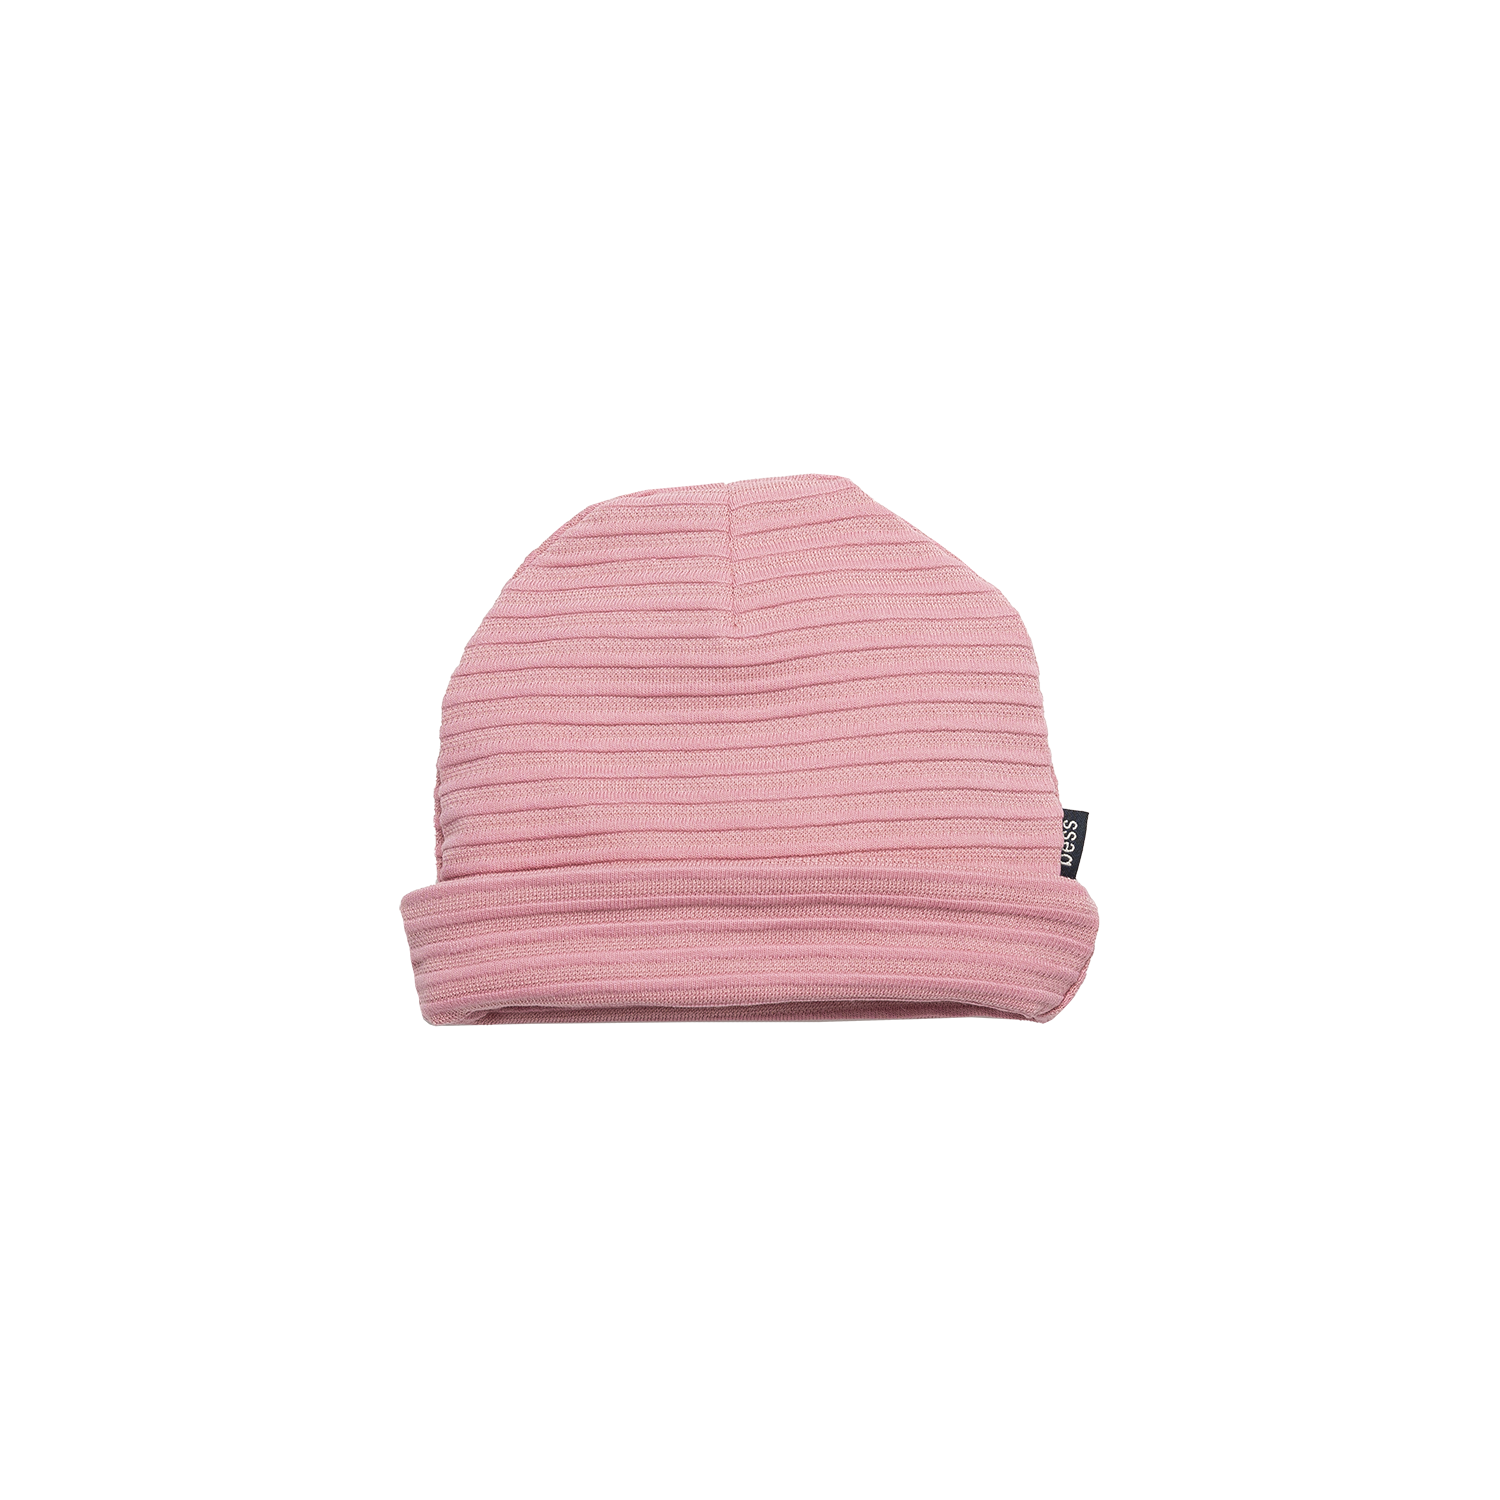 Meisjes Hat Rib van B.E.S.S. in de kleur Pink in maat 1.